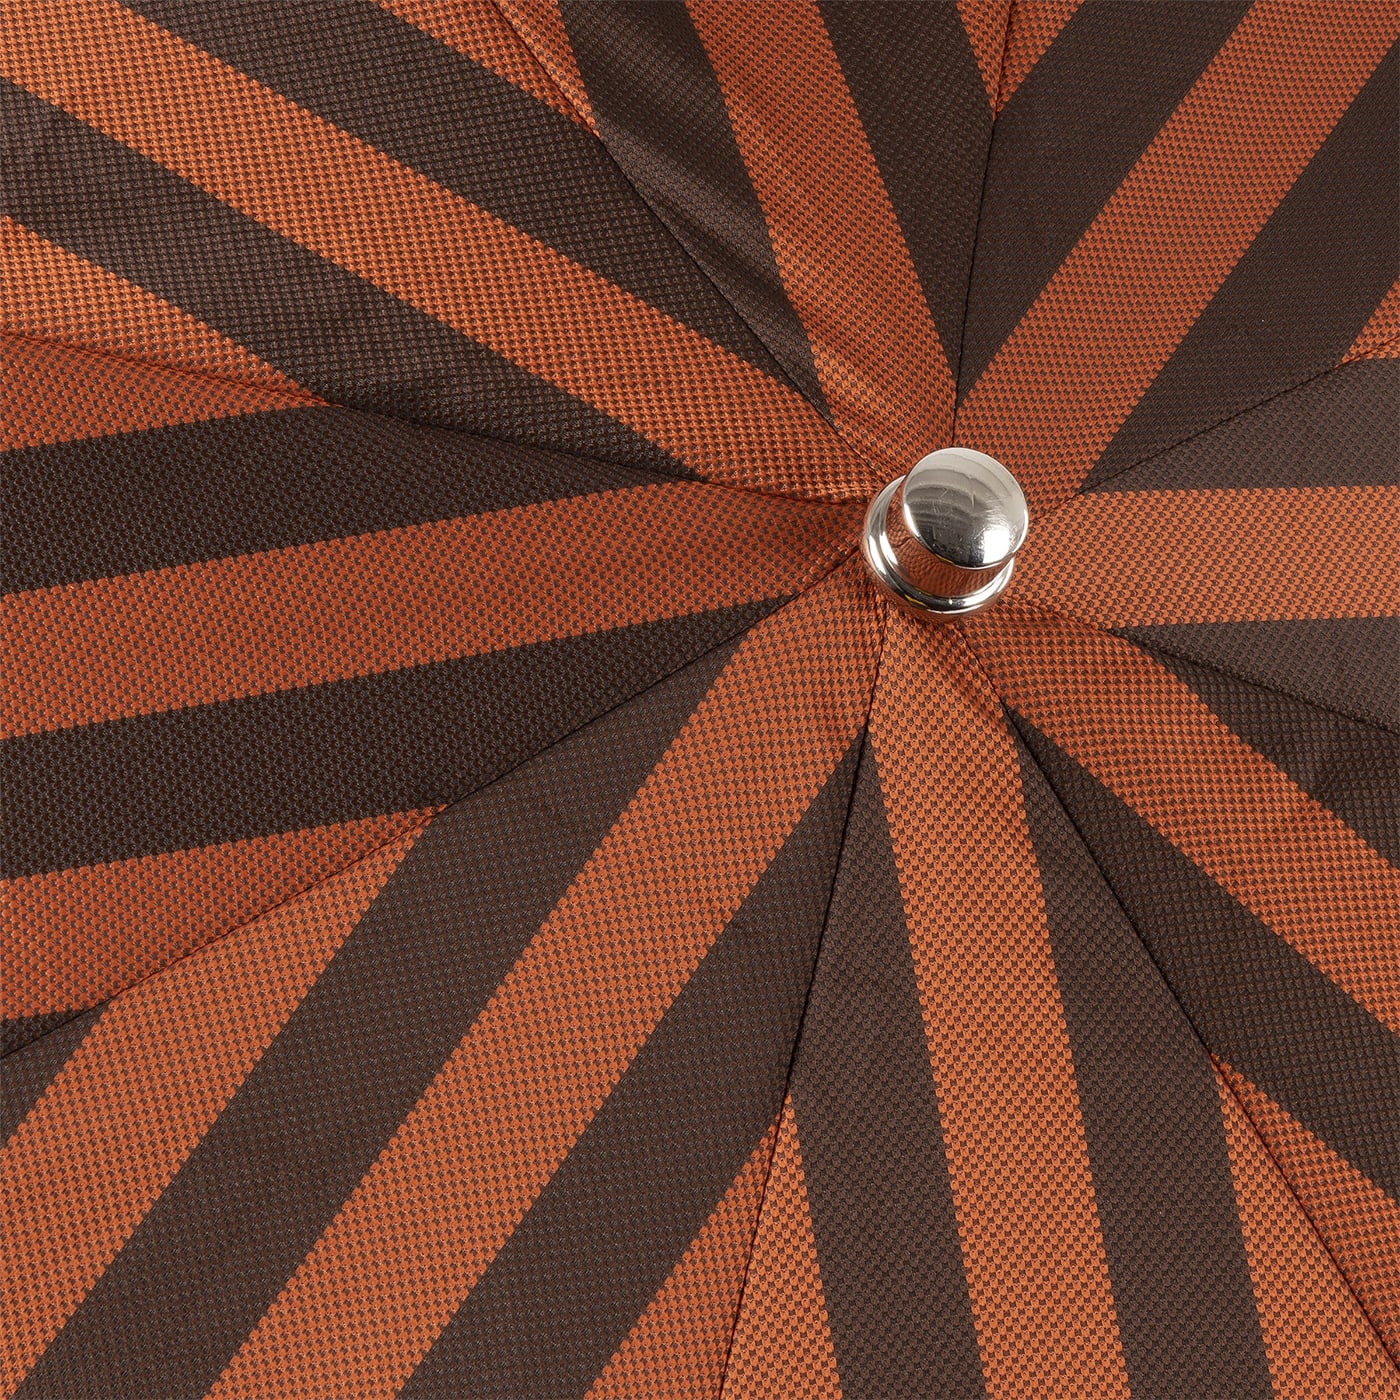 Orange and Brown Stripe Foldable Umbrella - Francesco Maglia Milano